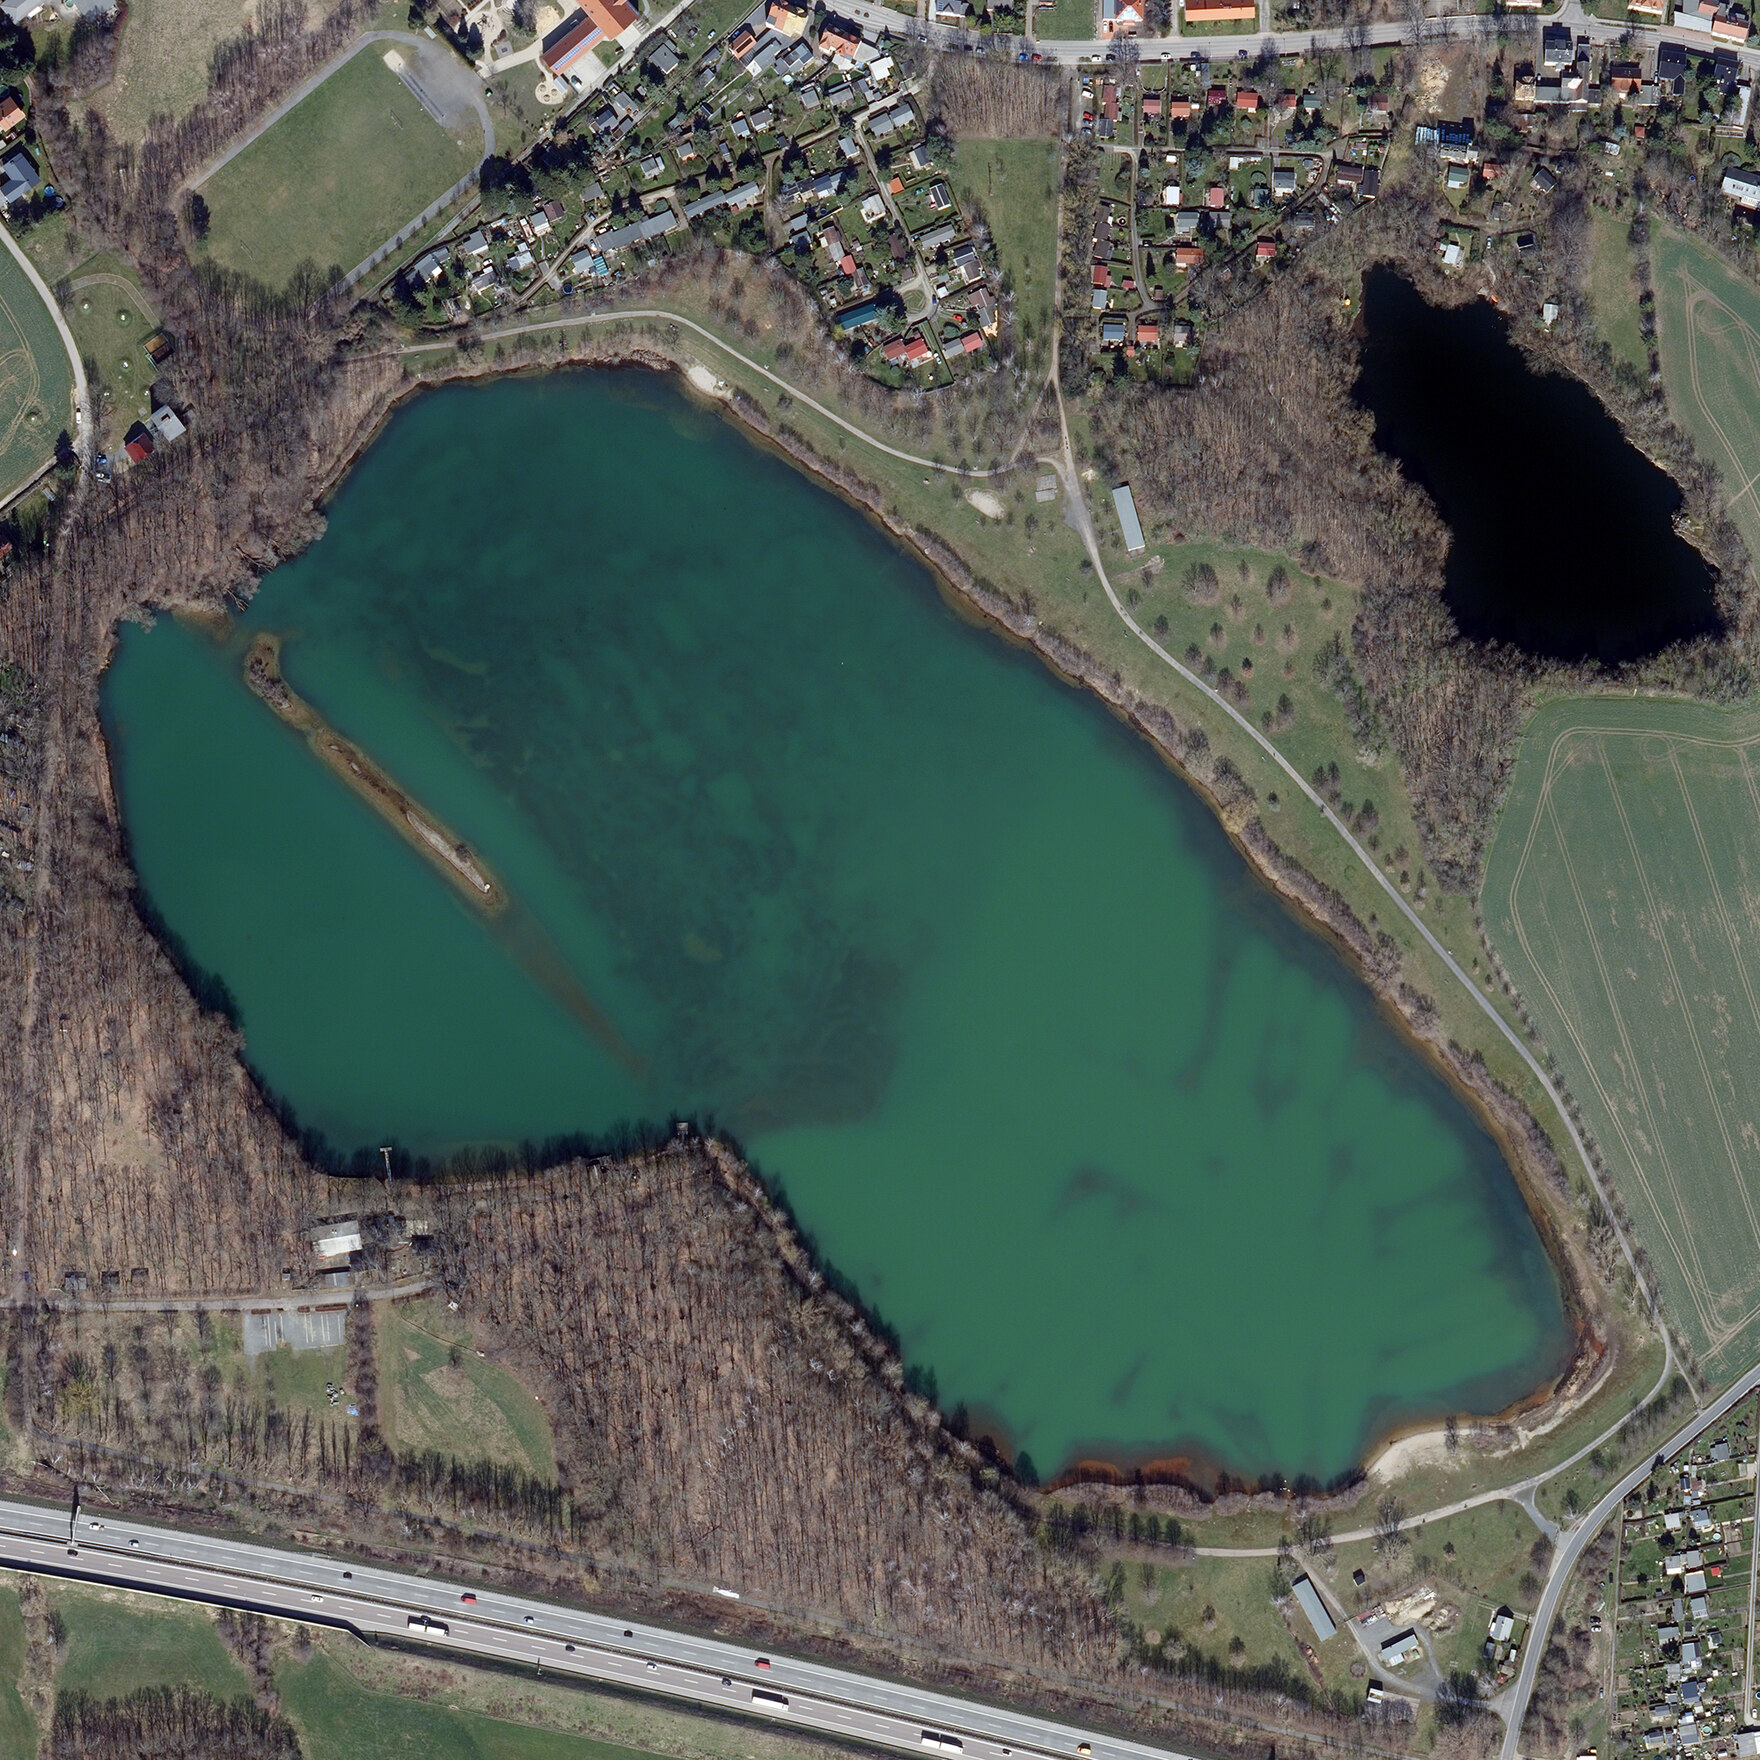 Luftbild vom Albrechtshainer See